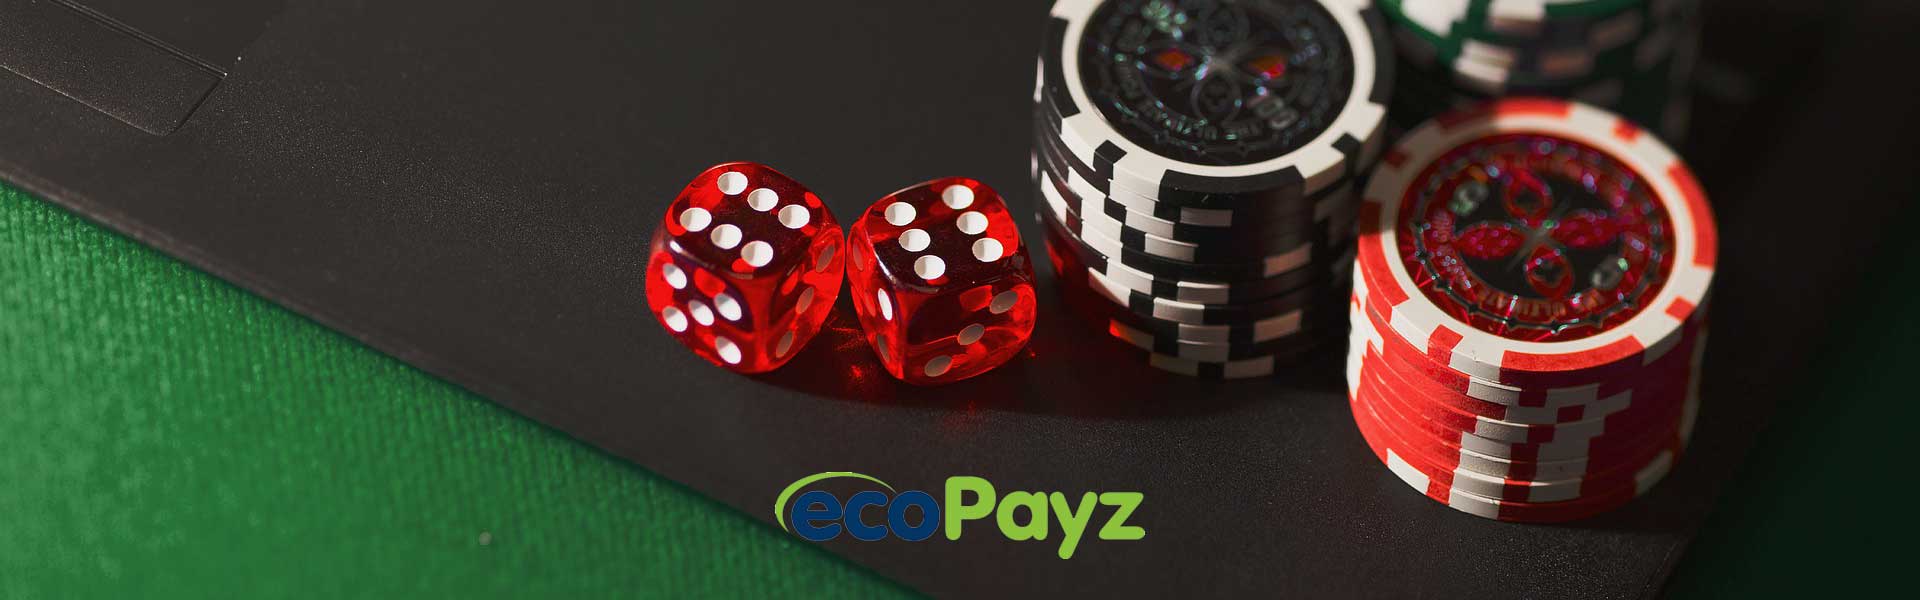 casinos con EcoPayz